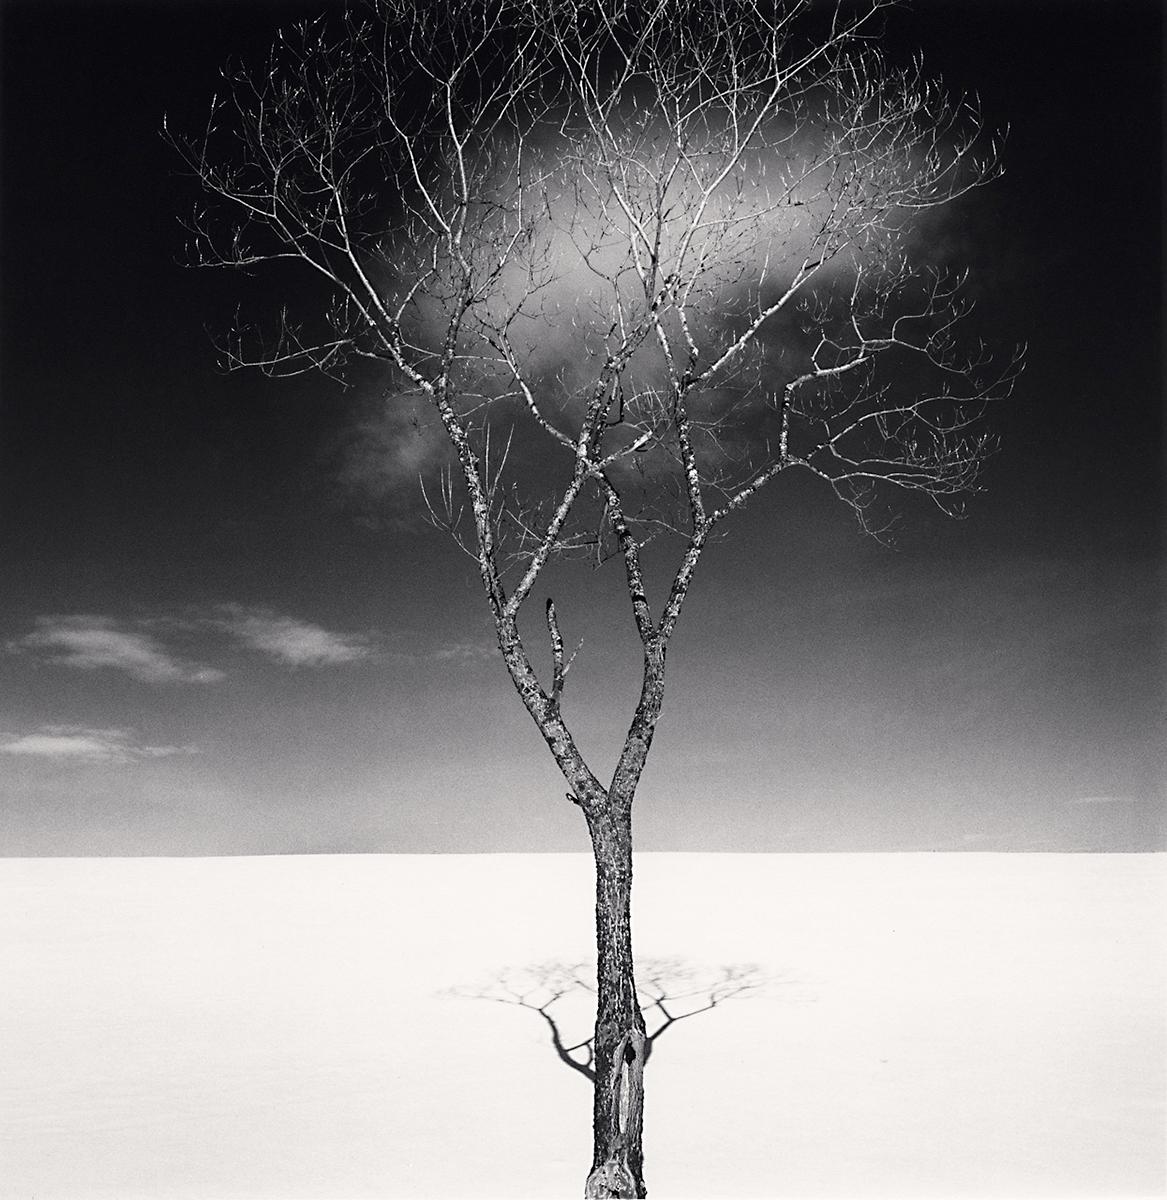 Onishi-Baum Schatten und Wolken, Studie 2, Hokkaido, Japan, von Michael Kenna, 2023